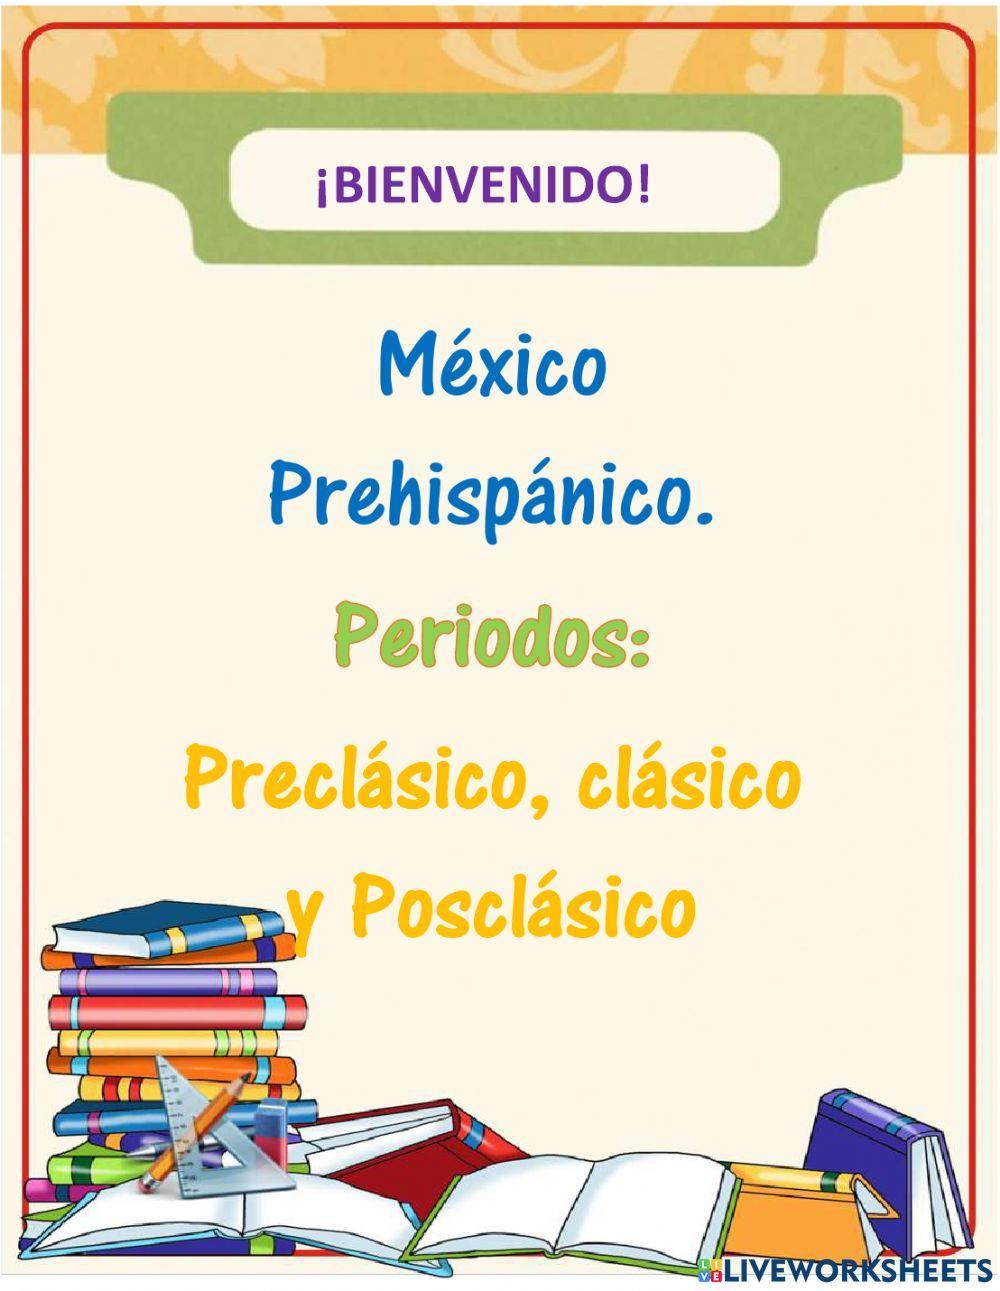 Periodos preclasico, clasico y posclasico de mexico prehispanico